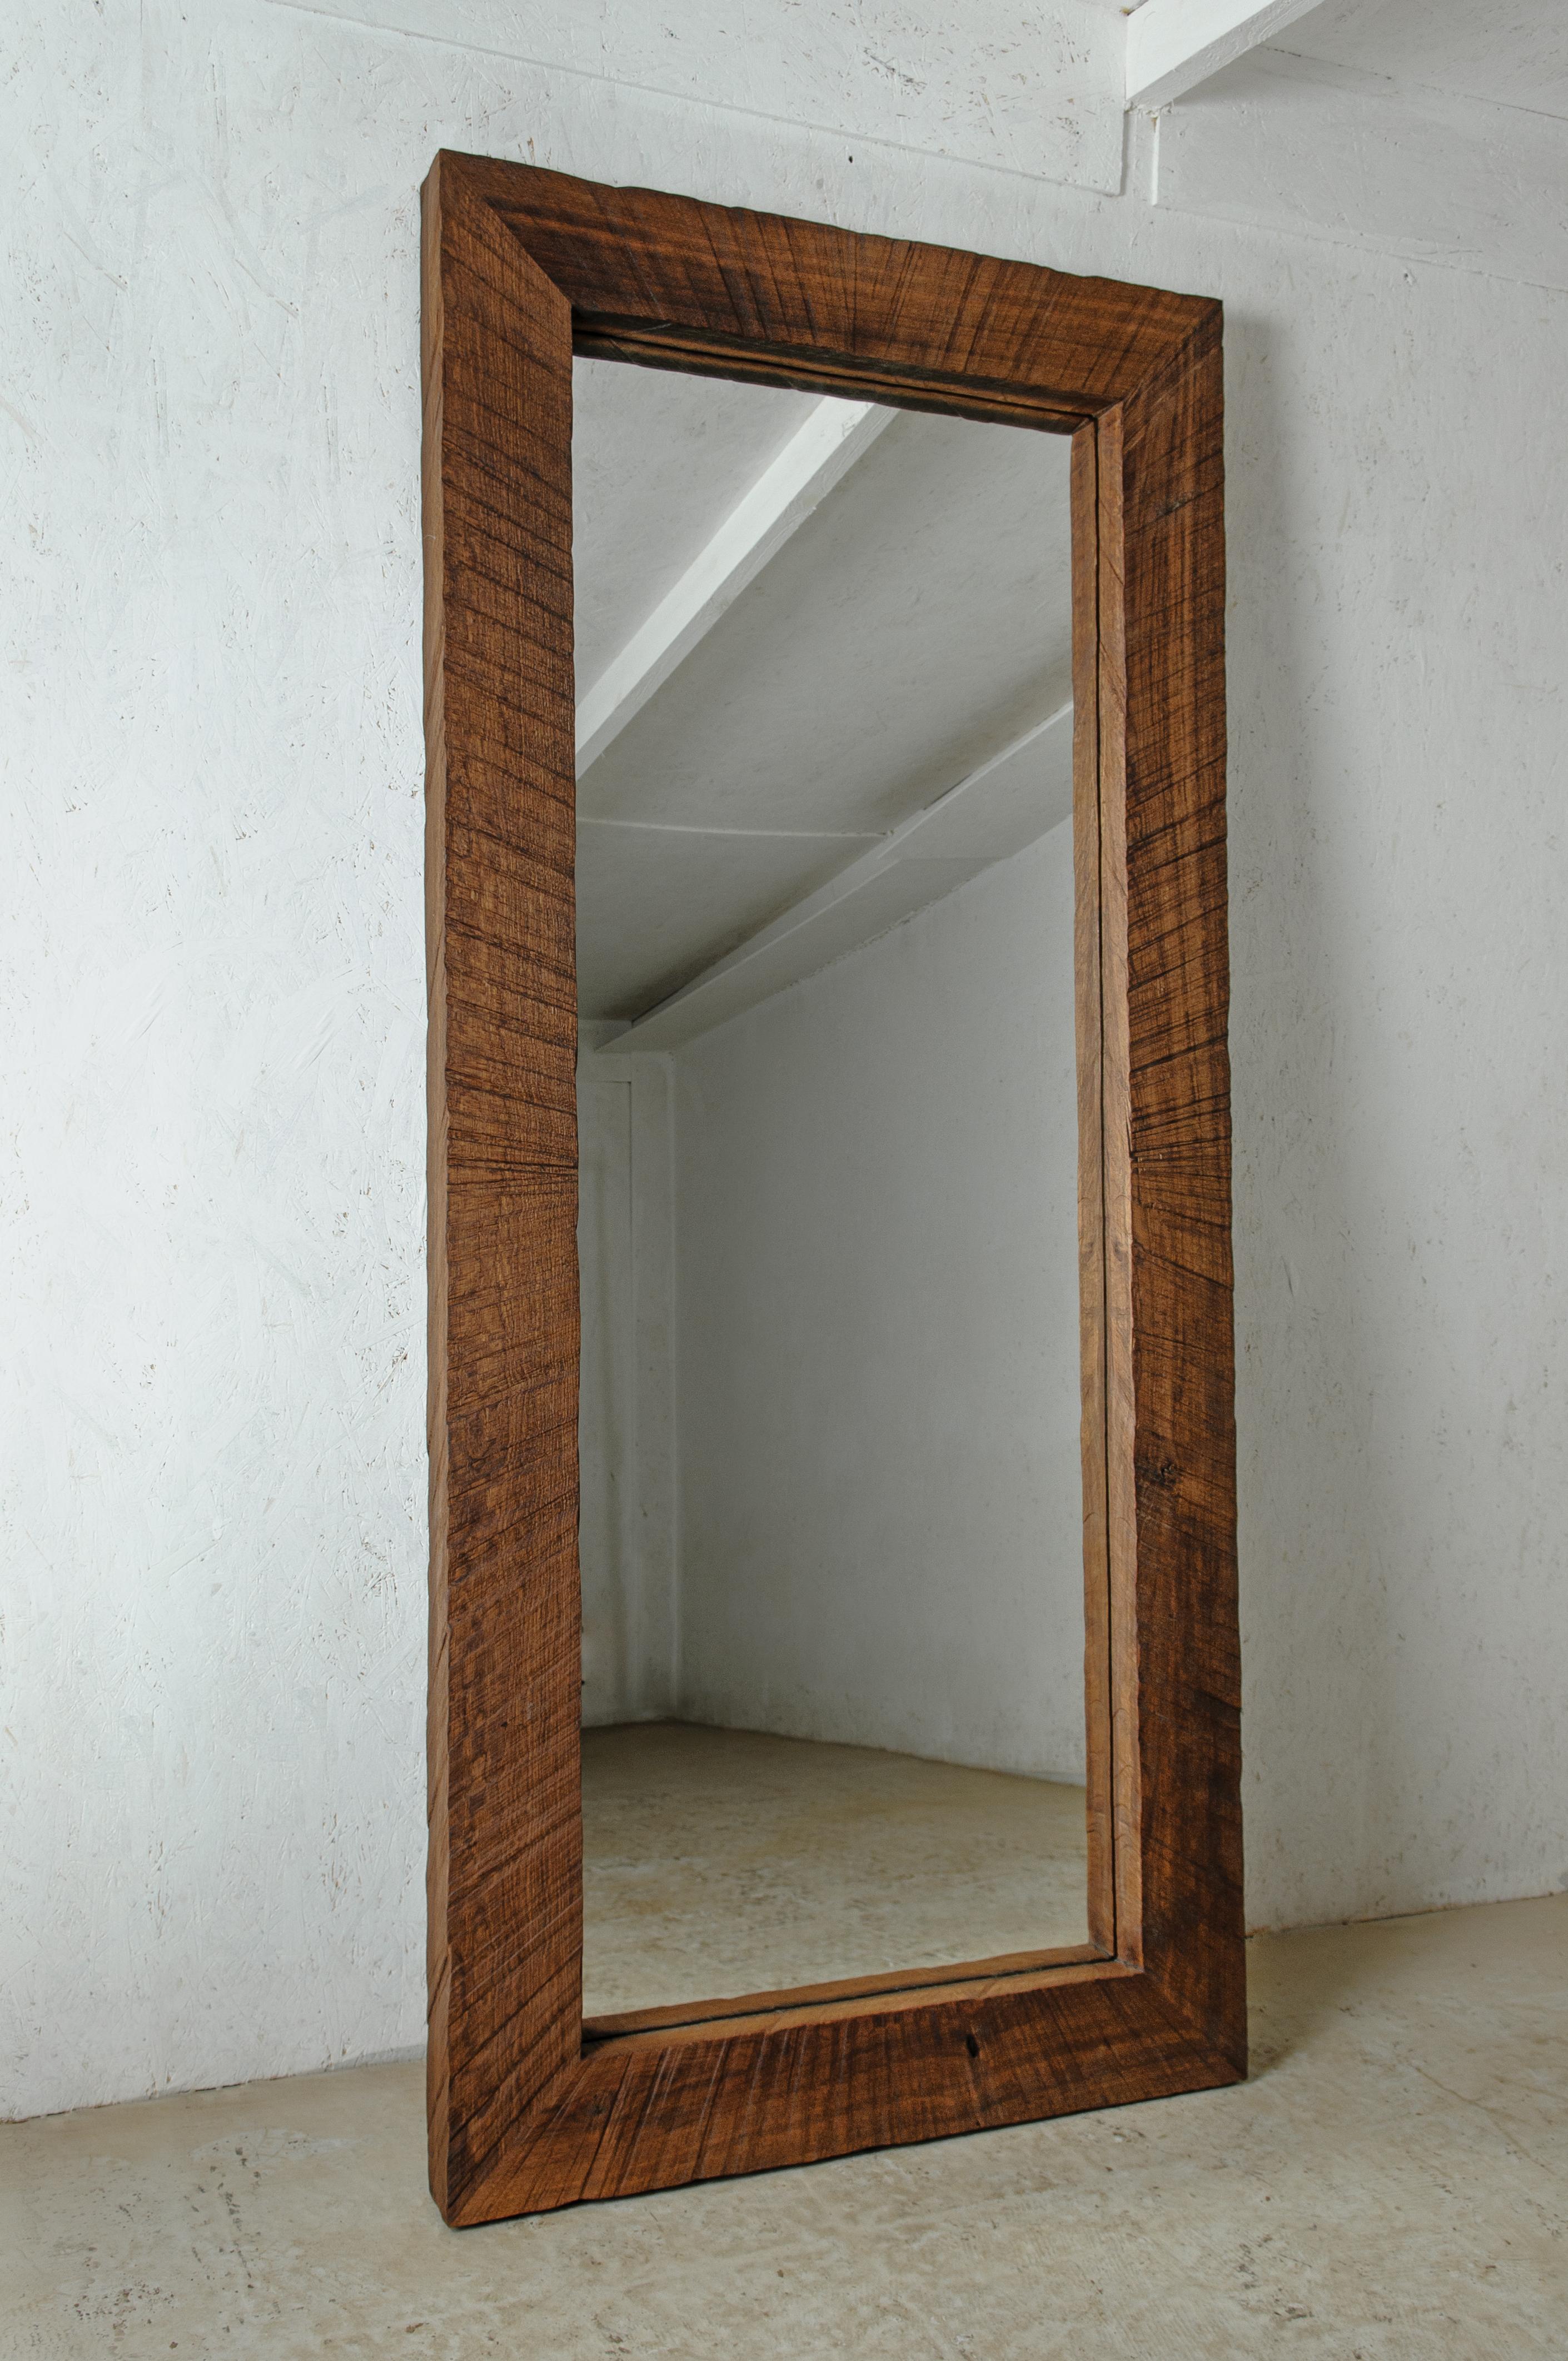 Spiegel in voller Länge aus massiver Eiche (+ Leinöl)
Maße: 189 x 98 x 10 cm

Das Sóha Design Studio entwirft und produziert Möbel und Dekorationsobjekte aus massiver Eiche in einem authentischen Stil. Die Inspiration für all diese Gegenstände kommt